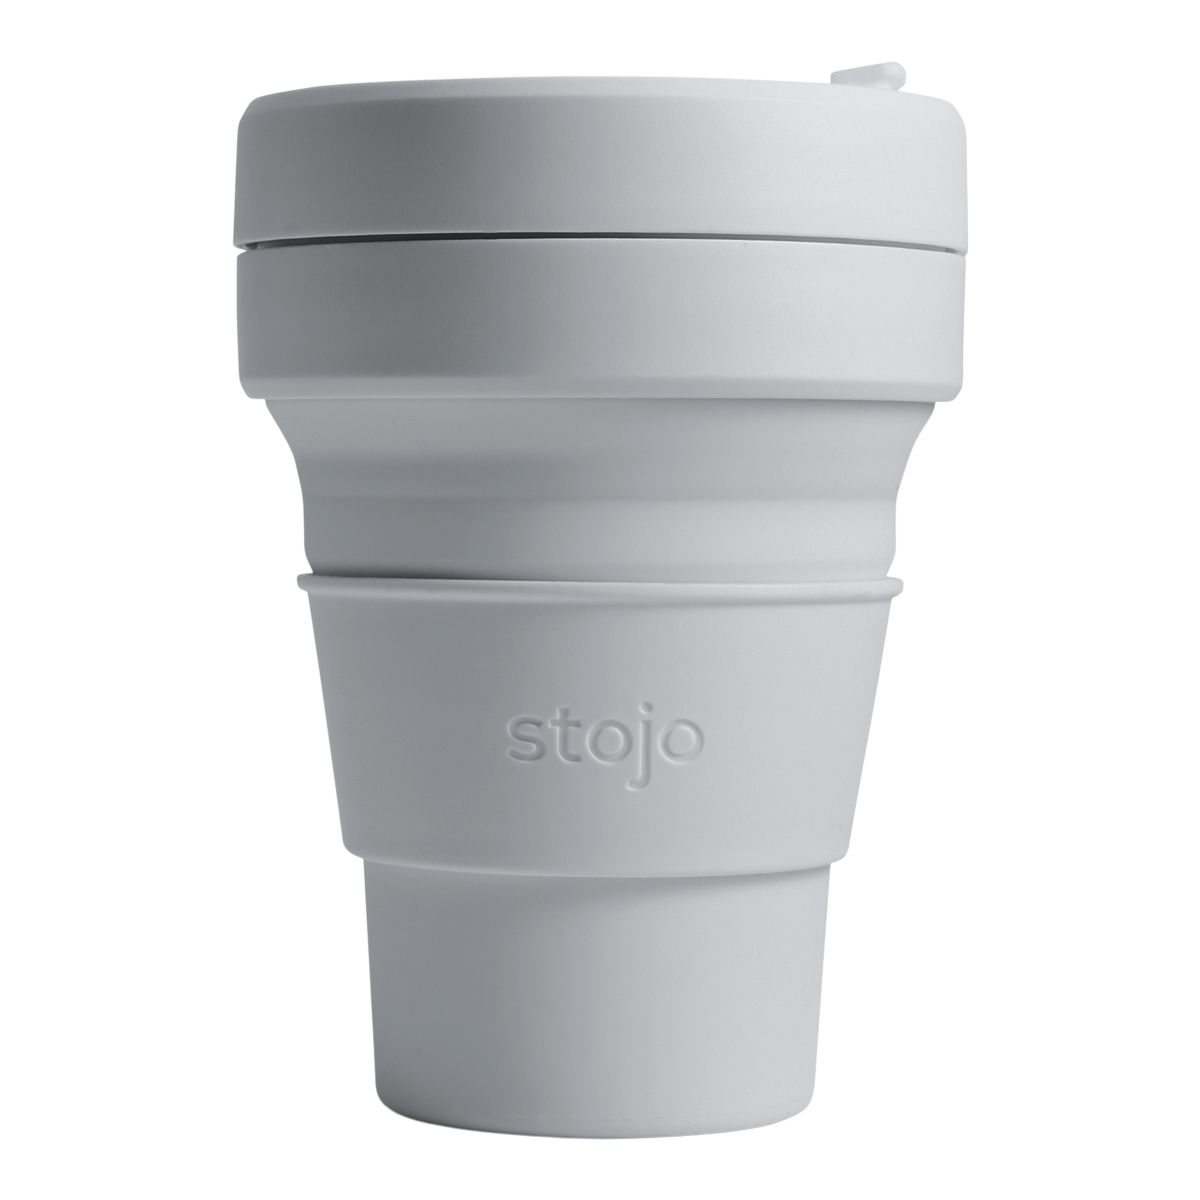 Image of Stojo Pocket Cup 12 oz Mug Sip Lid Silicone Collapsible